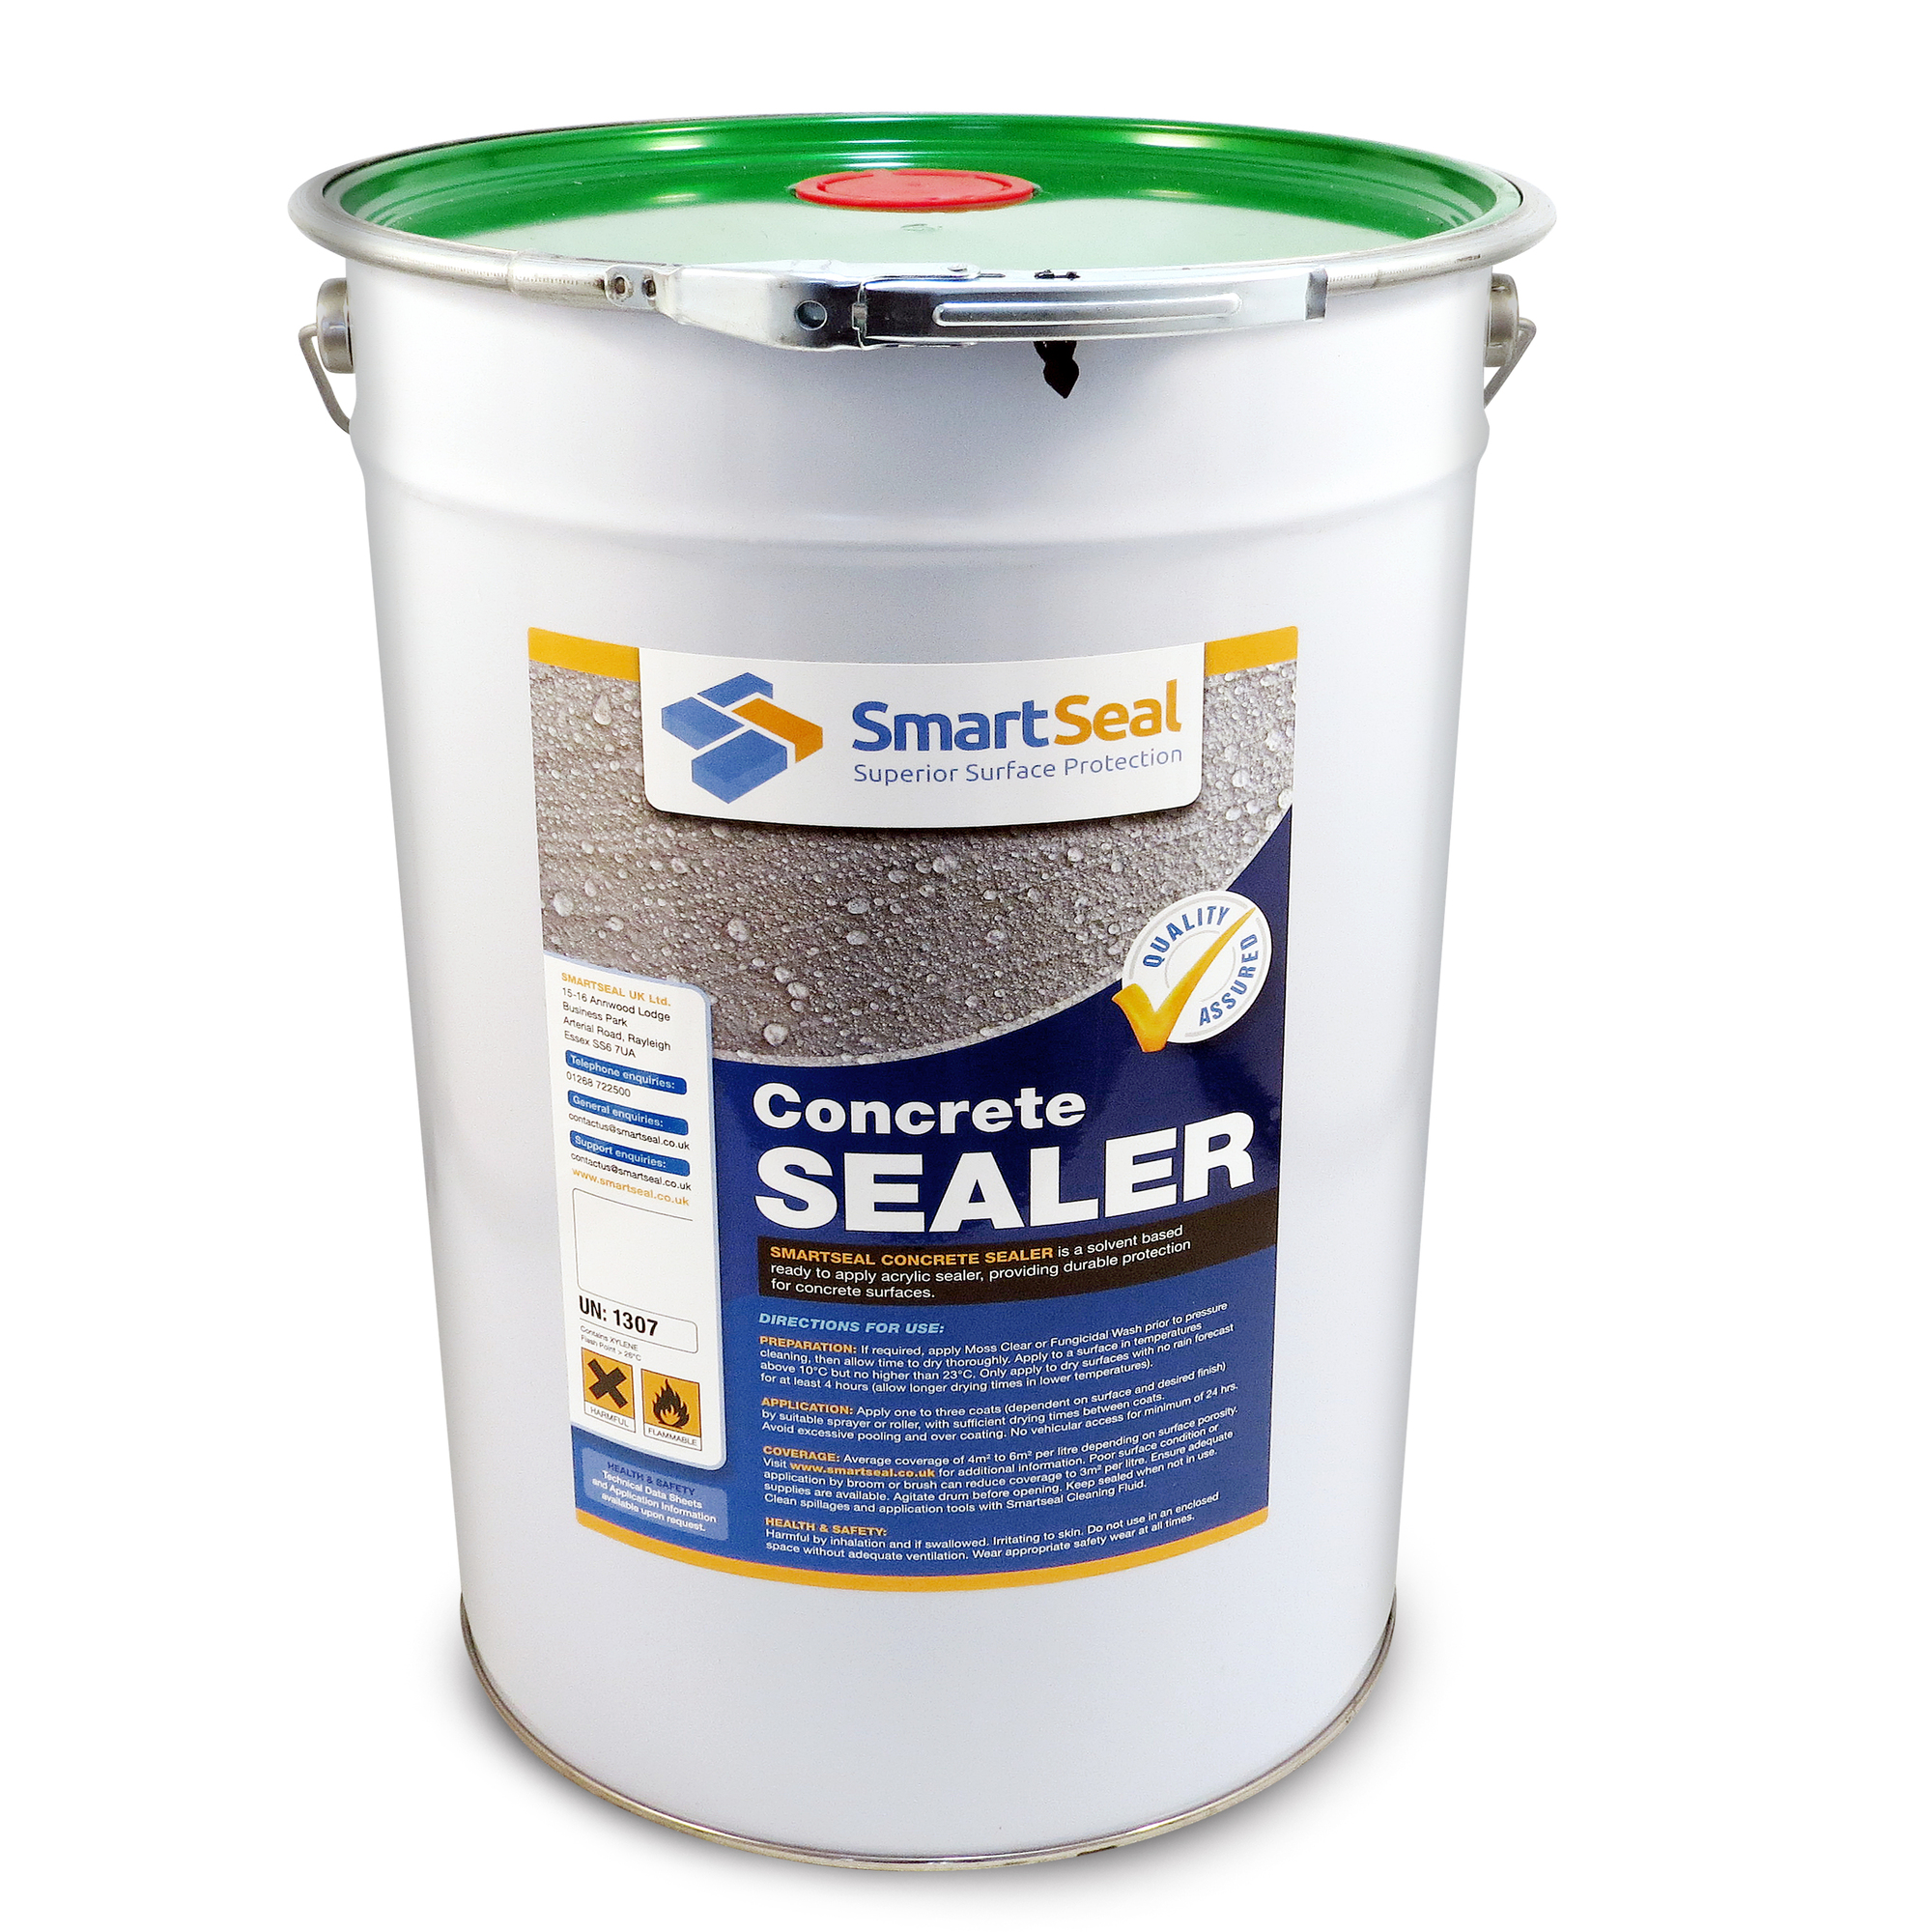 Dust sealer for concrete floors